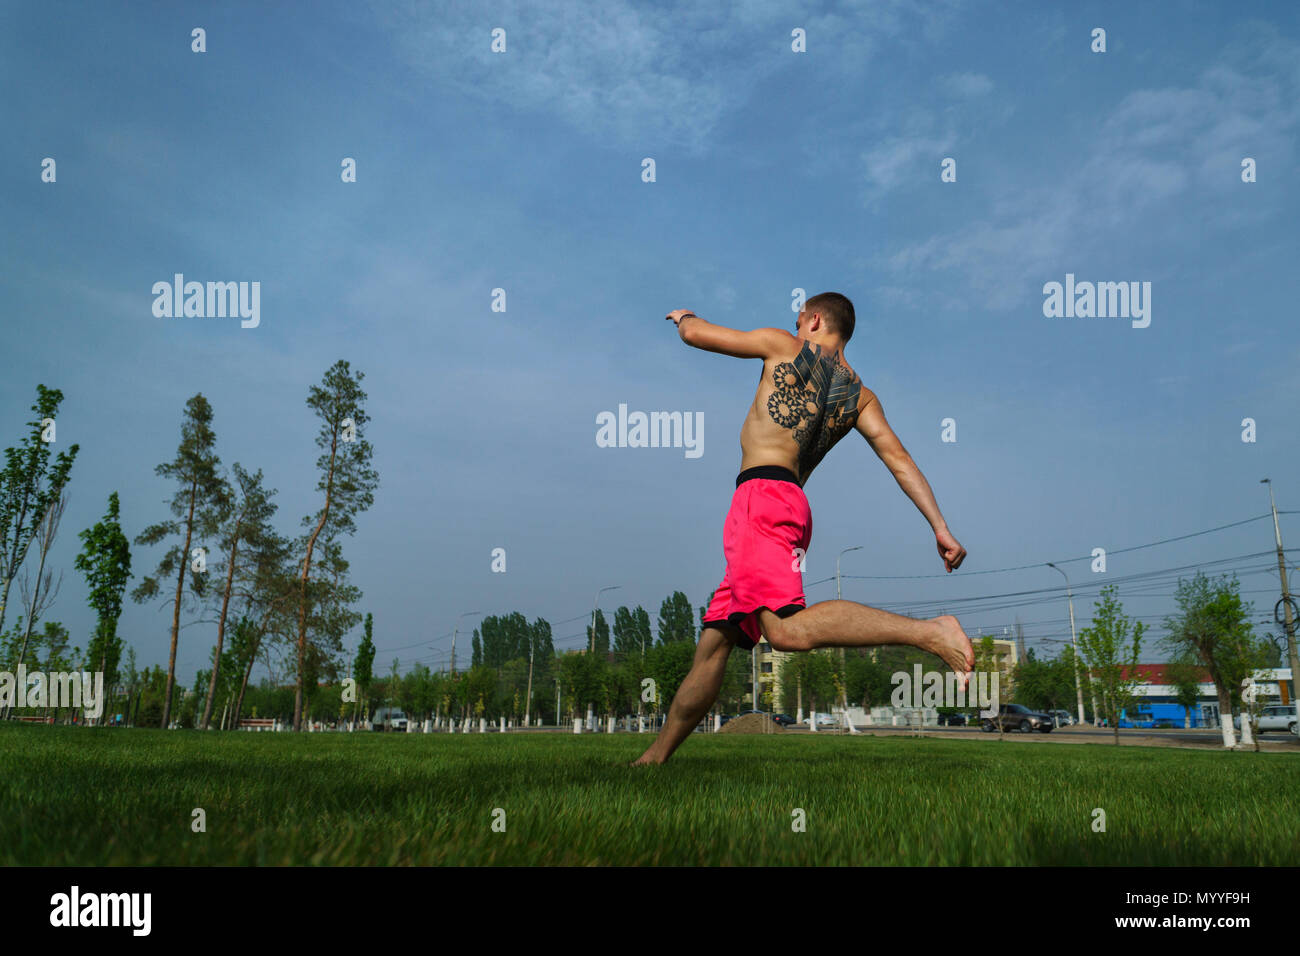 Austrickst, auf Rasen im Park. Der Mensch ist dabei laufen für springen. Kampfkunst und Parkour. Street Workout. Stockfoto